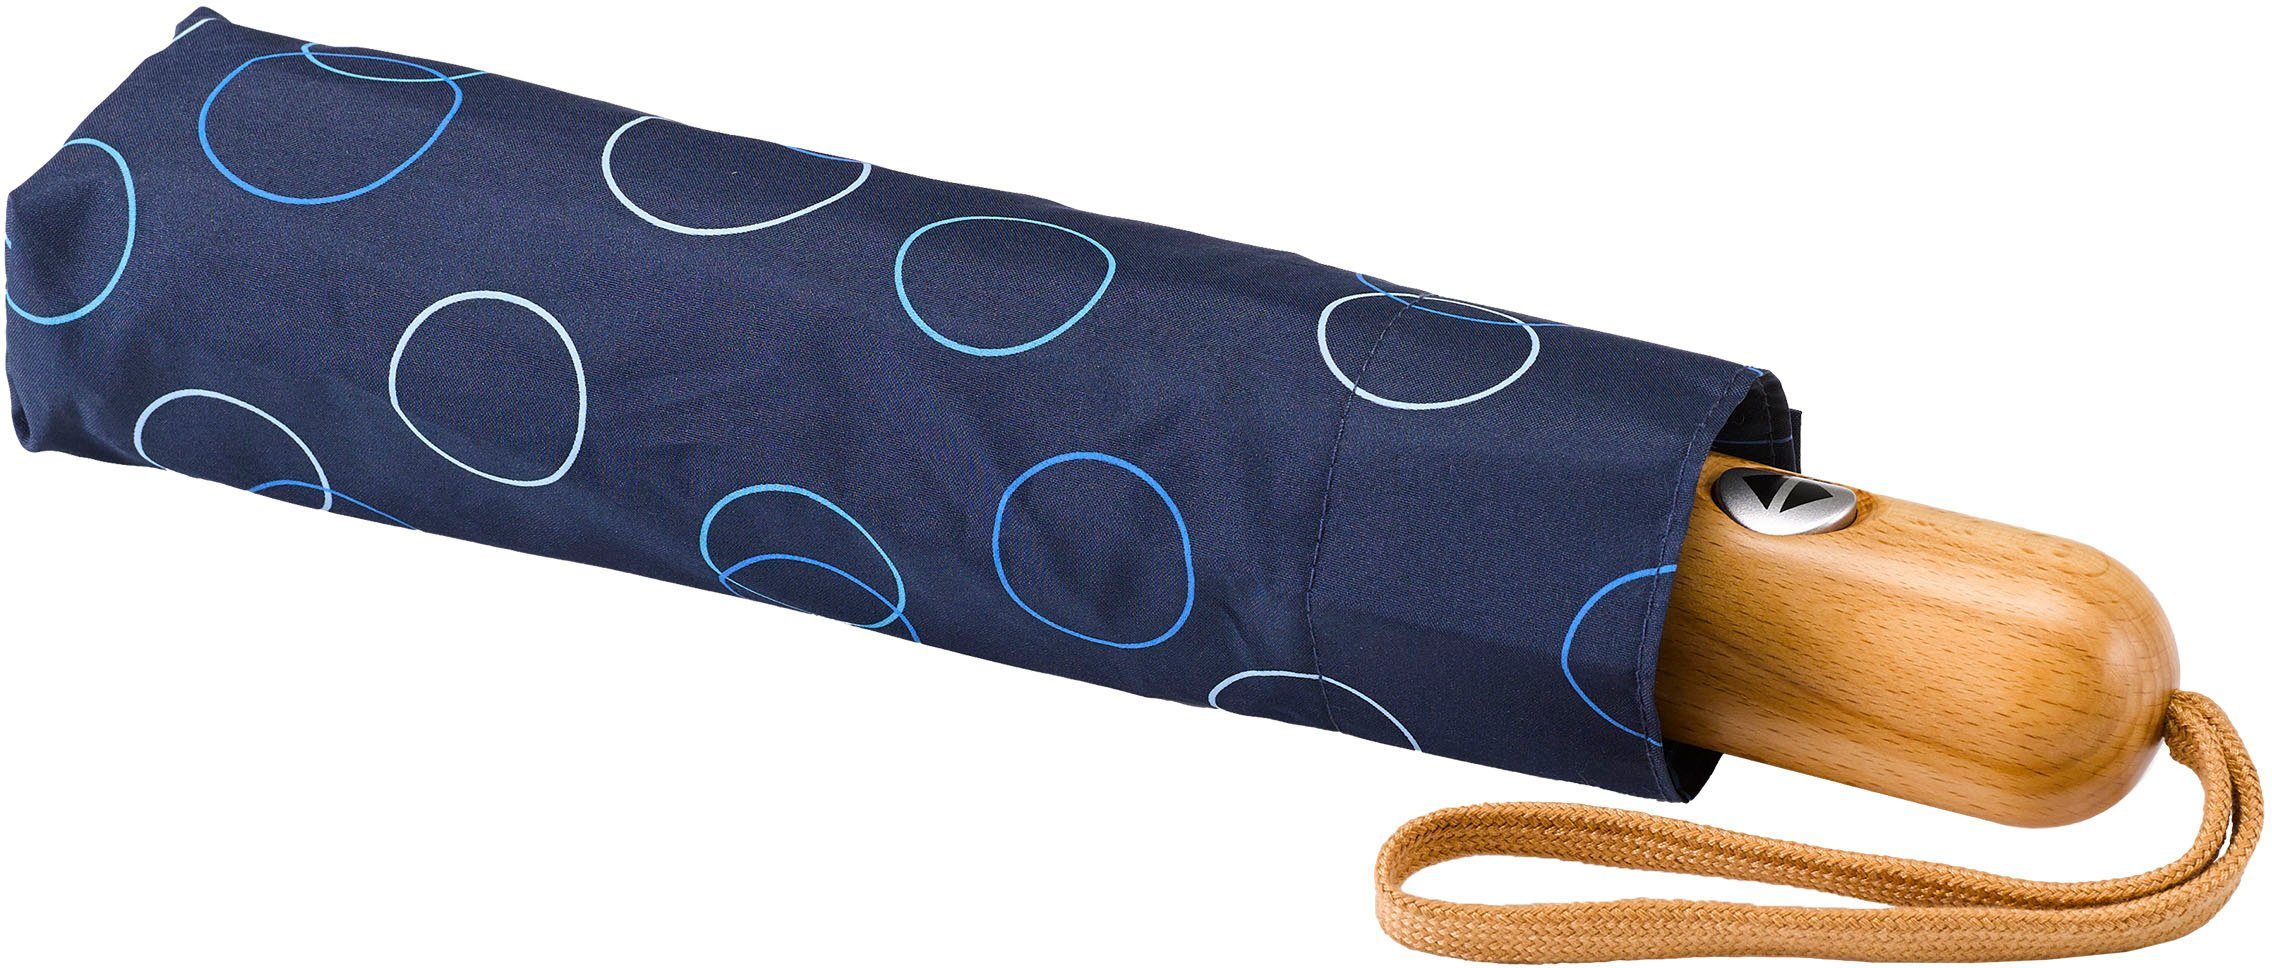 EuroSCHIRM® Taschenregenschirm marine, Umwelt-Taschenschirm, Kreise blau